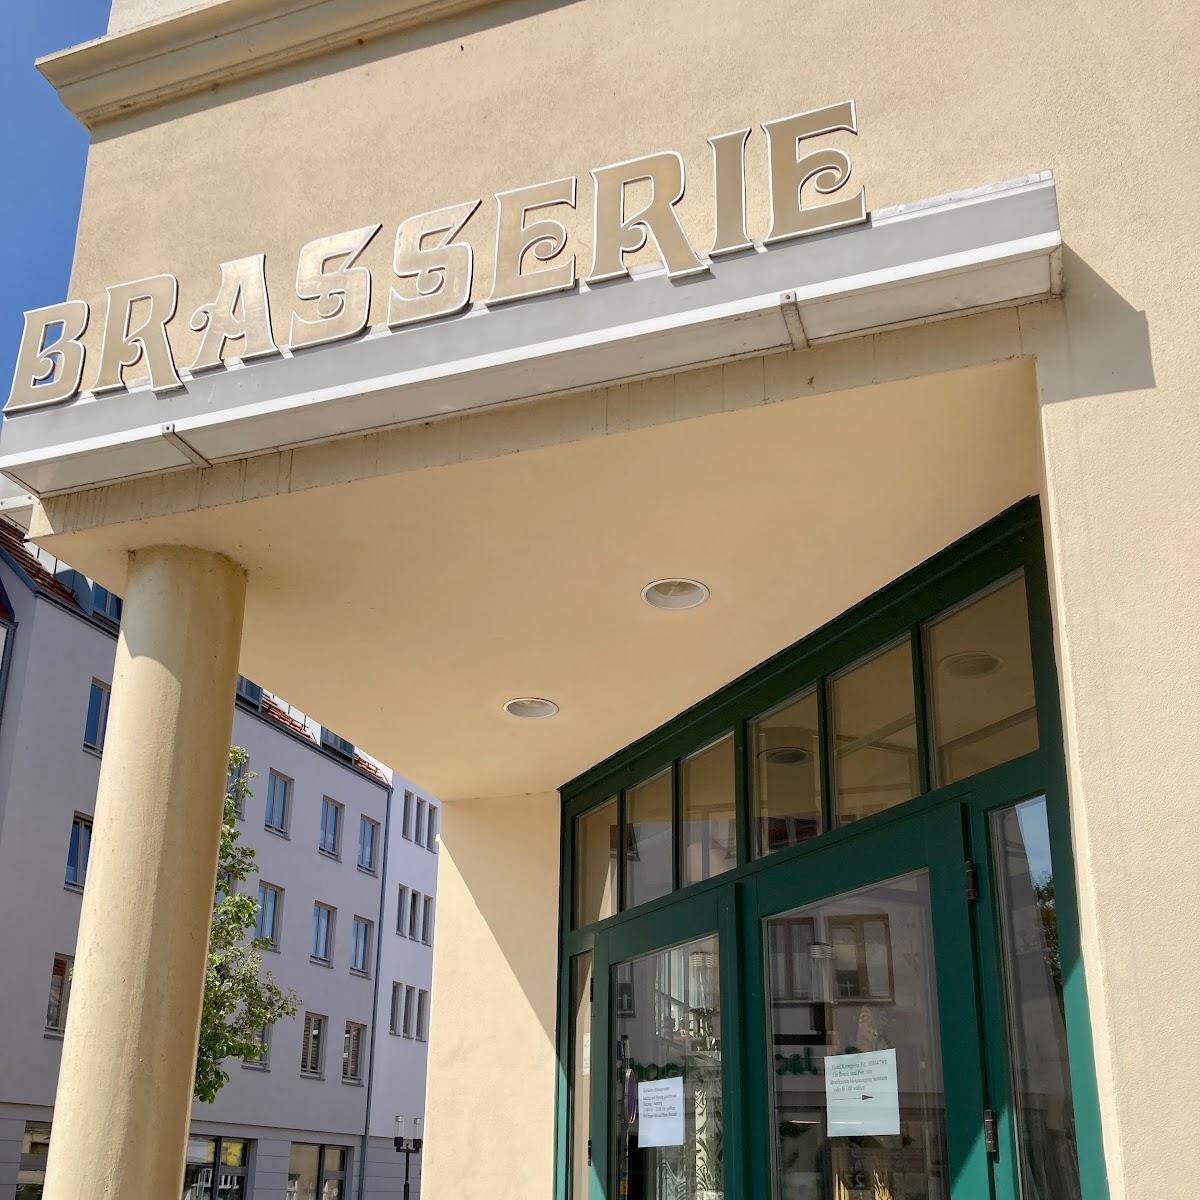 Restaurant "Brasserie" in Greifswald